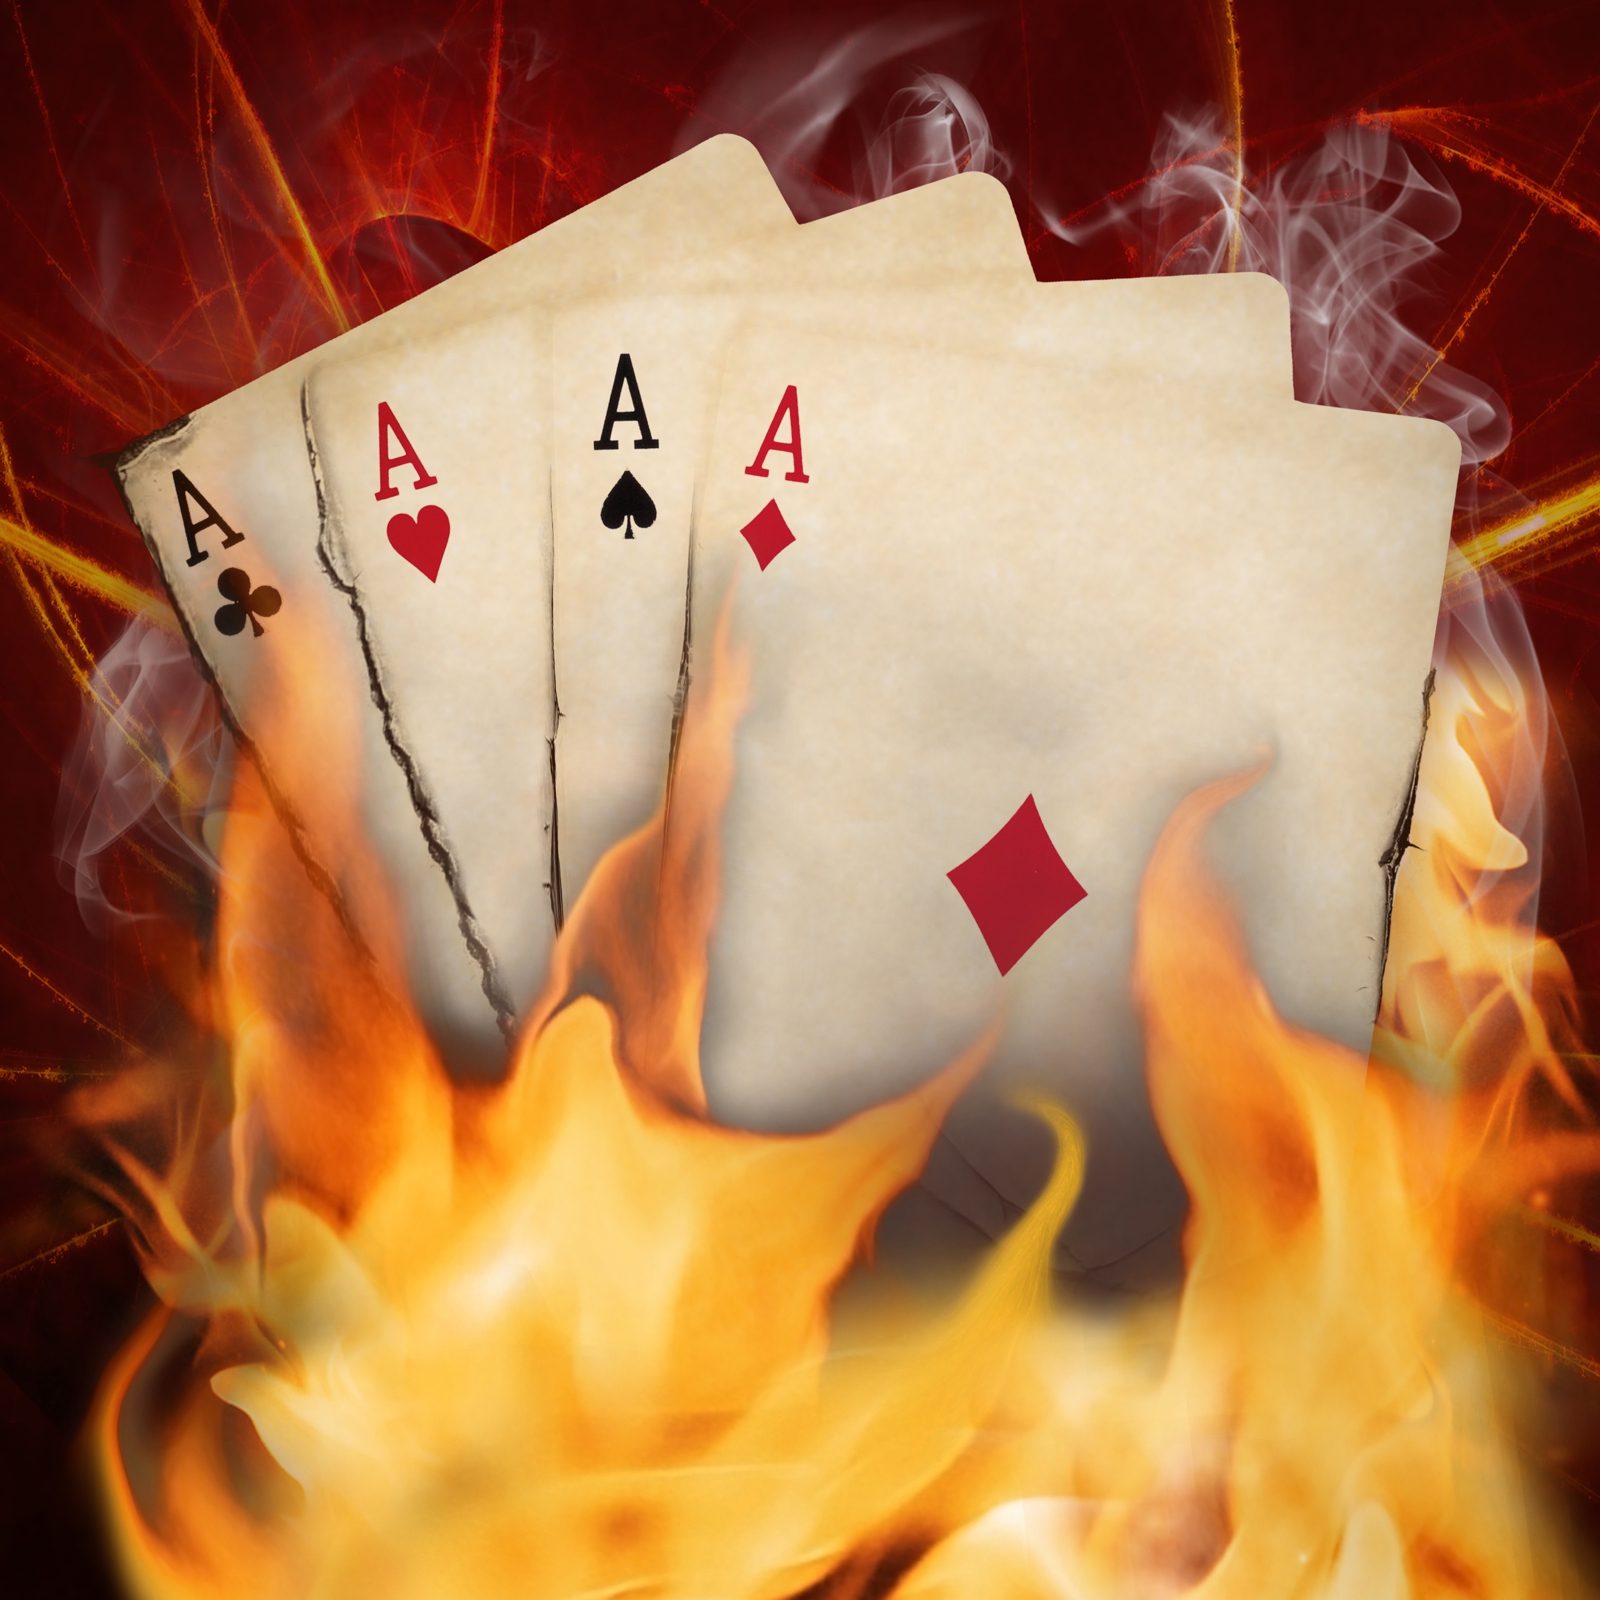 Beistelltisch Couchtisch mit Motiv Poker Casion 4 mal As in Flammen